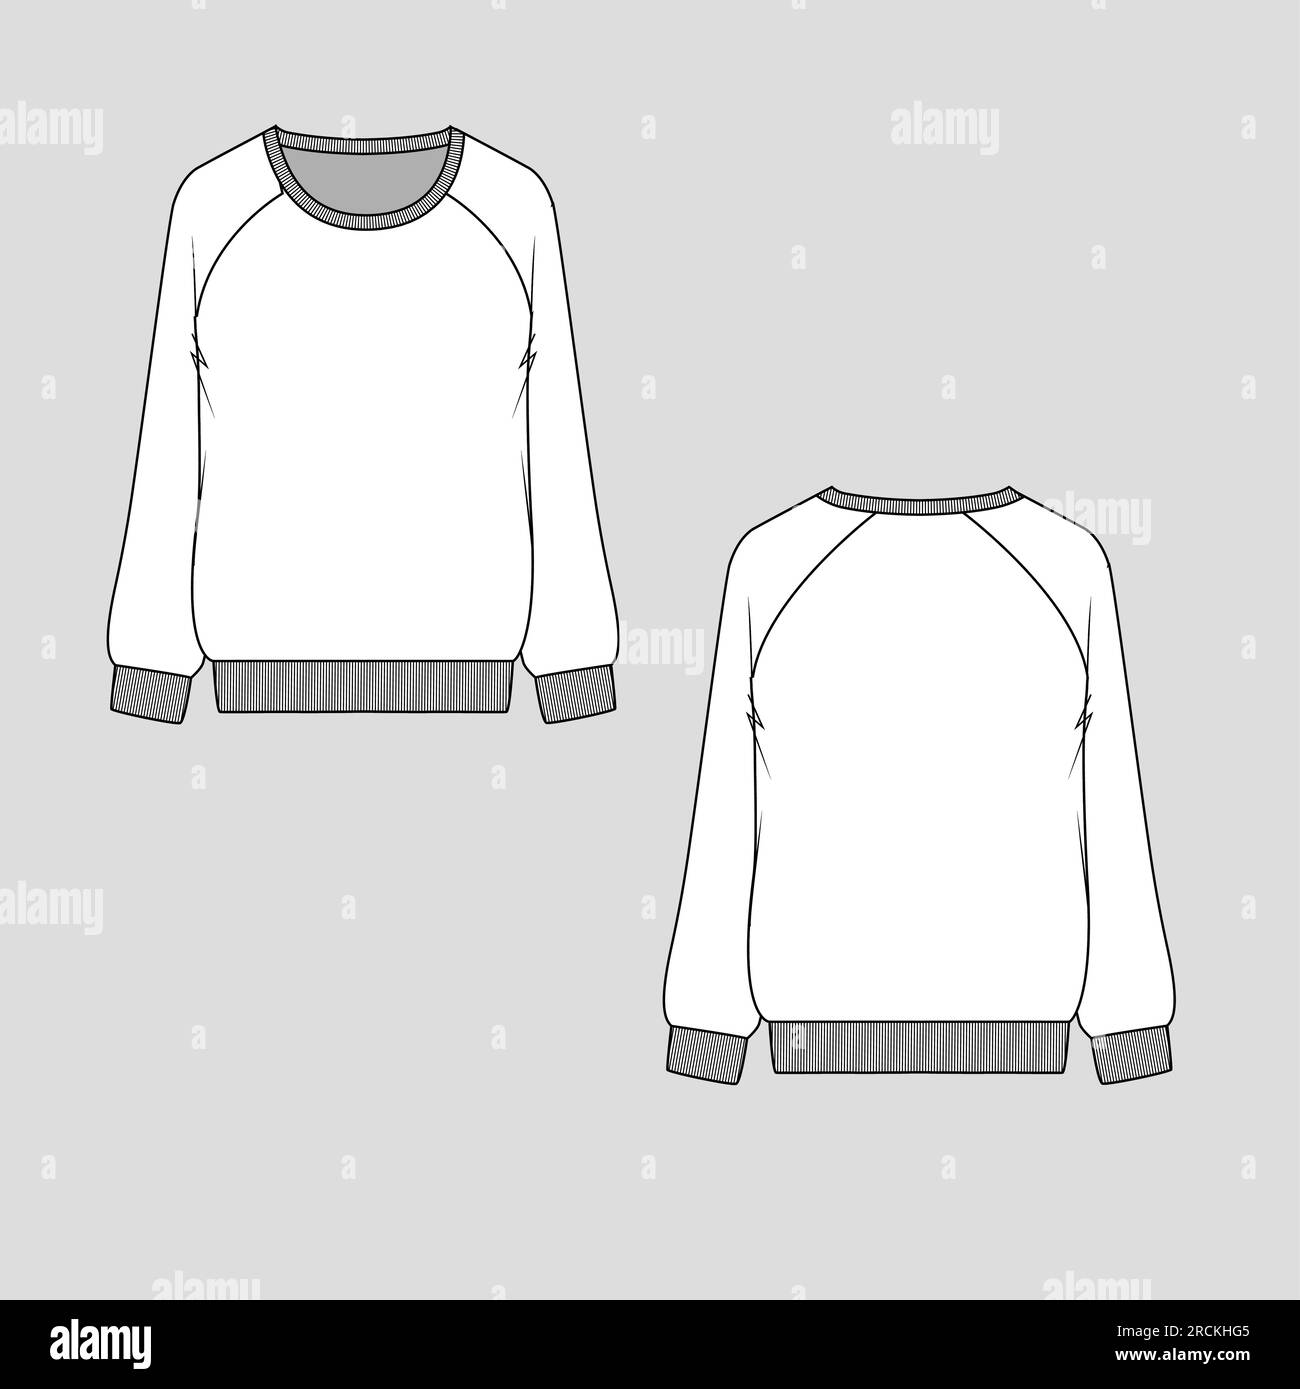 Sweatshirt template Banque d'images vectorielles - Alamy